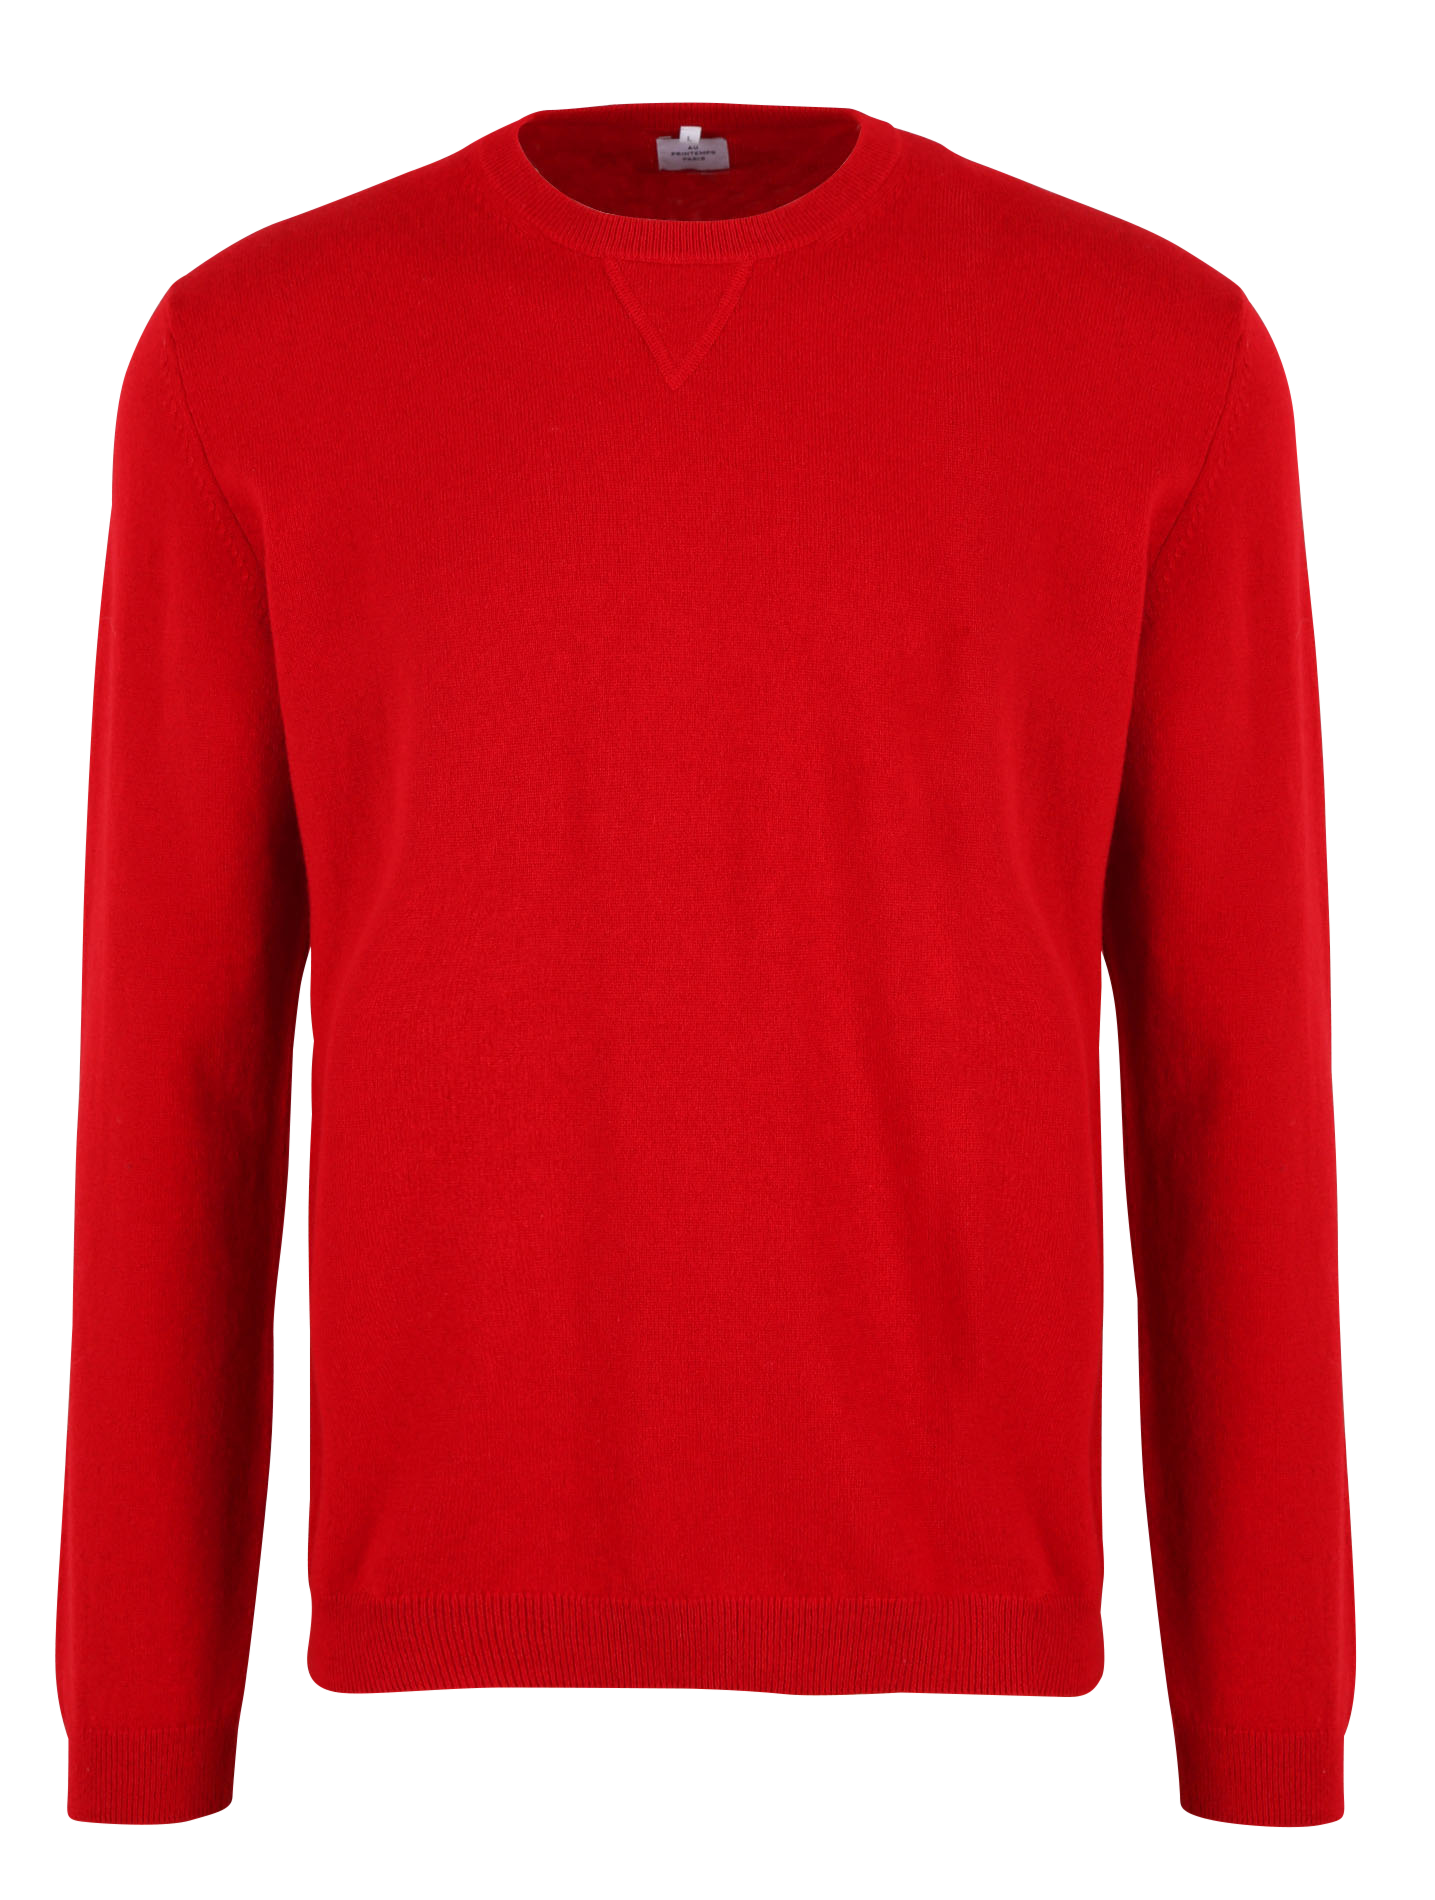 Mode Sweaters Kasjmier truien FTC Kasjmier trui rood prints met een thema casual uitstraling 